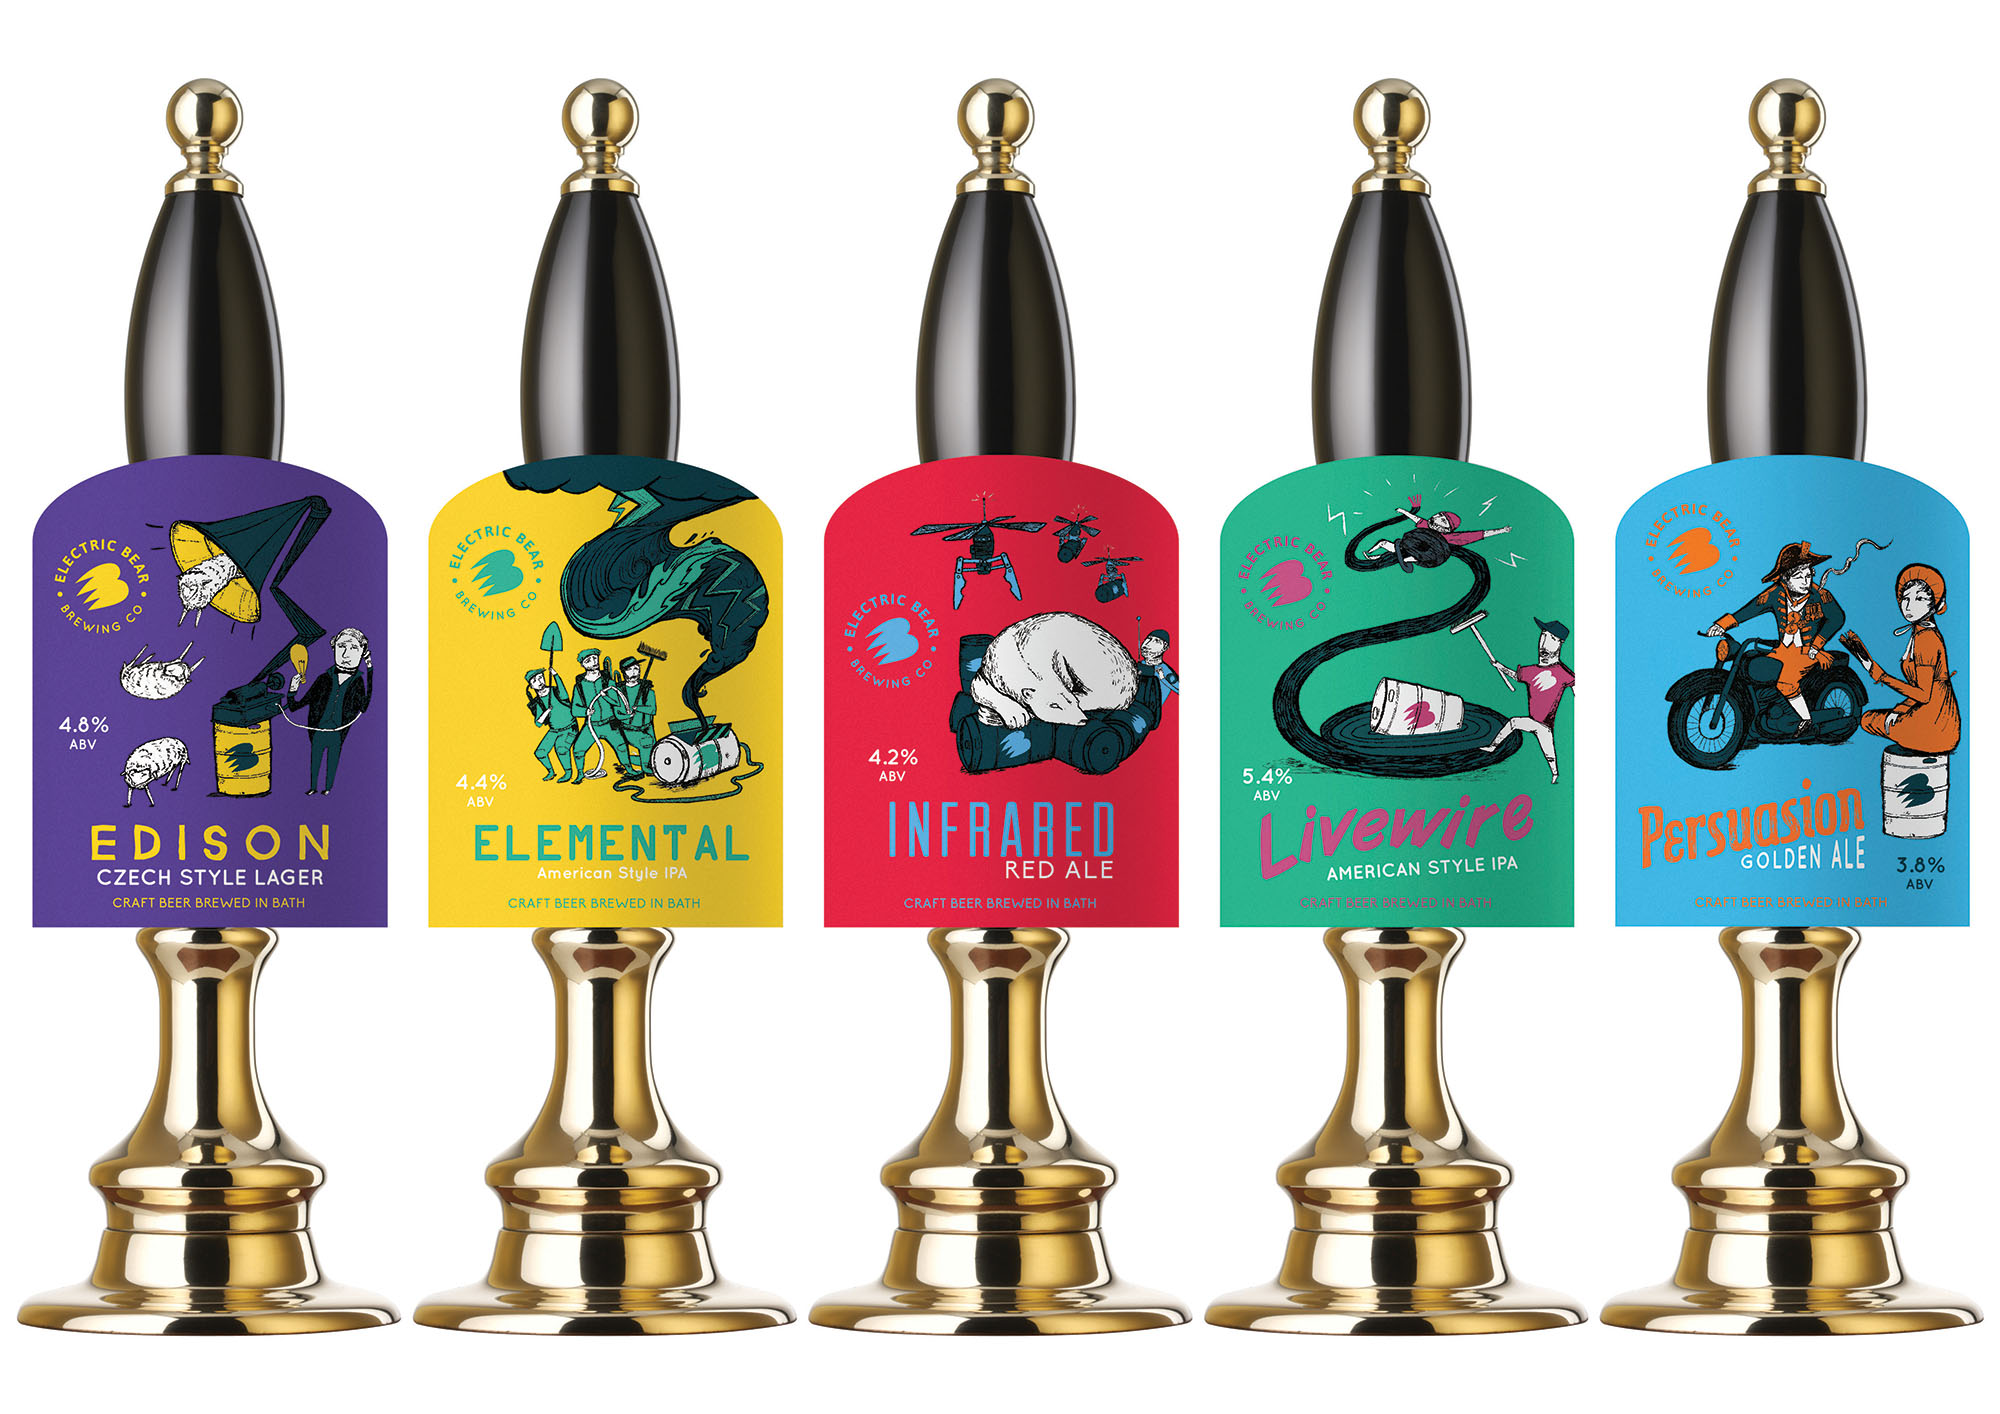 Electric Bear Brewery | Branding in Breweries | Marvellous Digital Agency